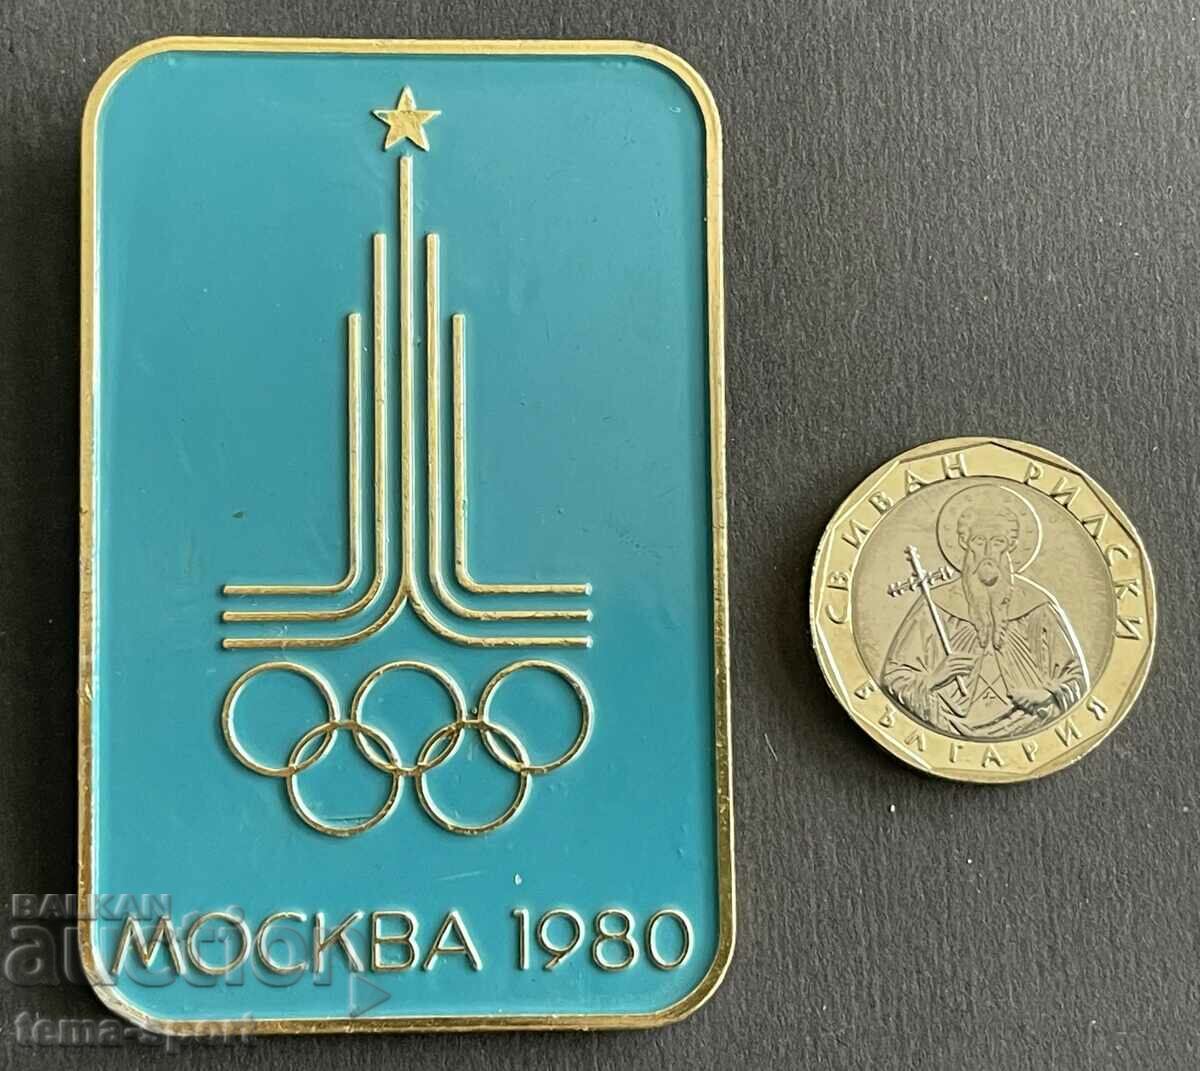 515 μεγάλο Ολυμπιακό σήμα της ΕΣΣΔ Ολυμπιακοί Αγώνες Μόσχα 1980.